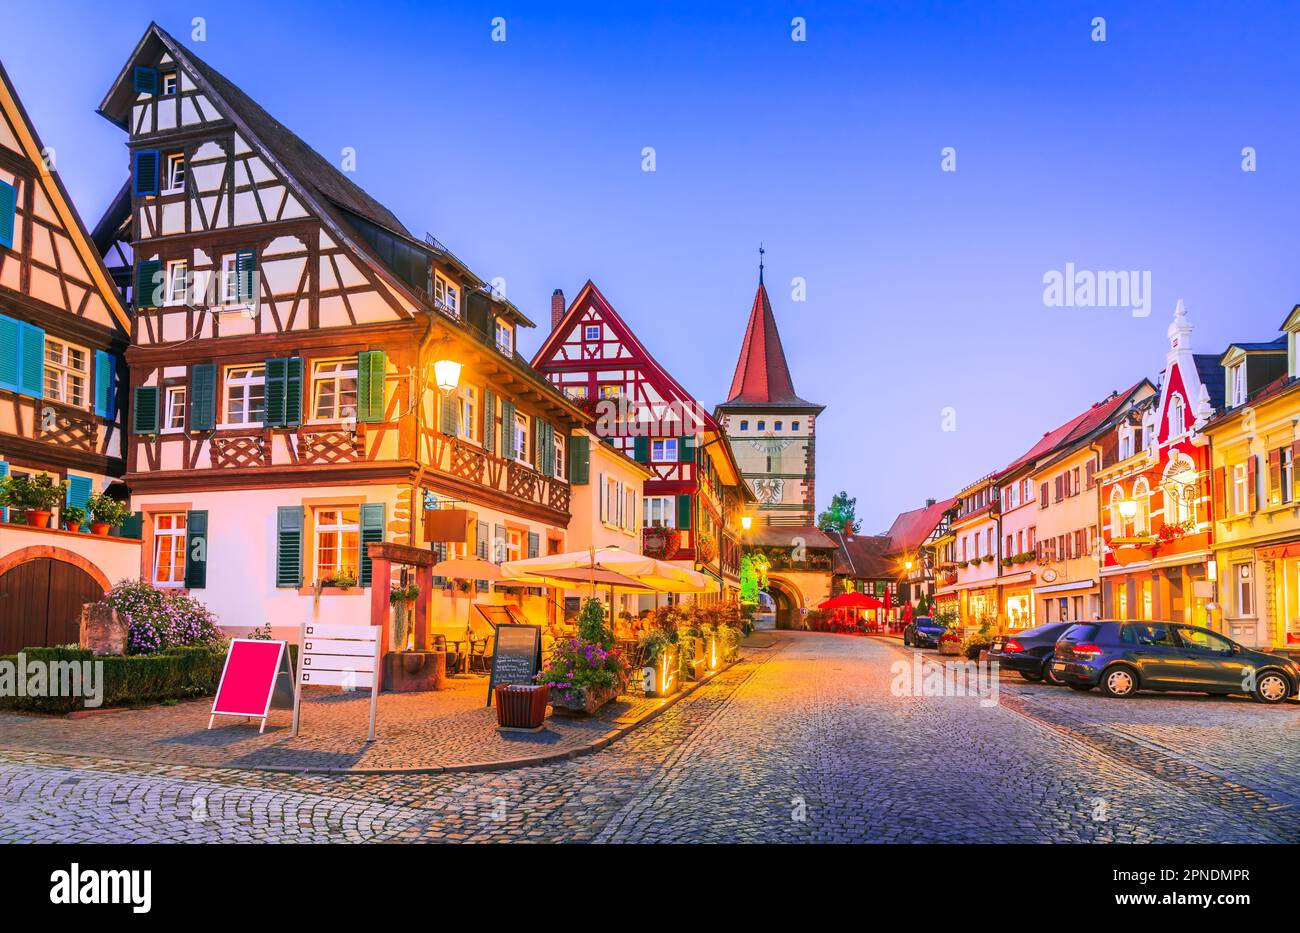 Gengenbach è una pittoresca cittadina nella regione della Foresta Nera in Germania, conosciuta per i suoi edifici storici ben conservati, le incantevoli strade acciottolate, Foto Stock